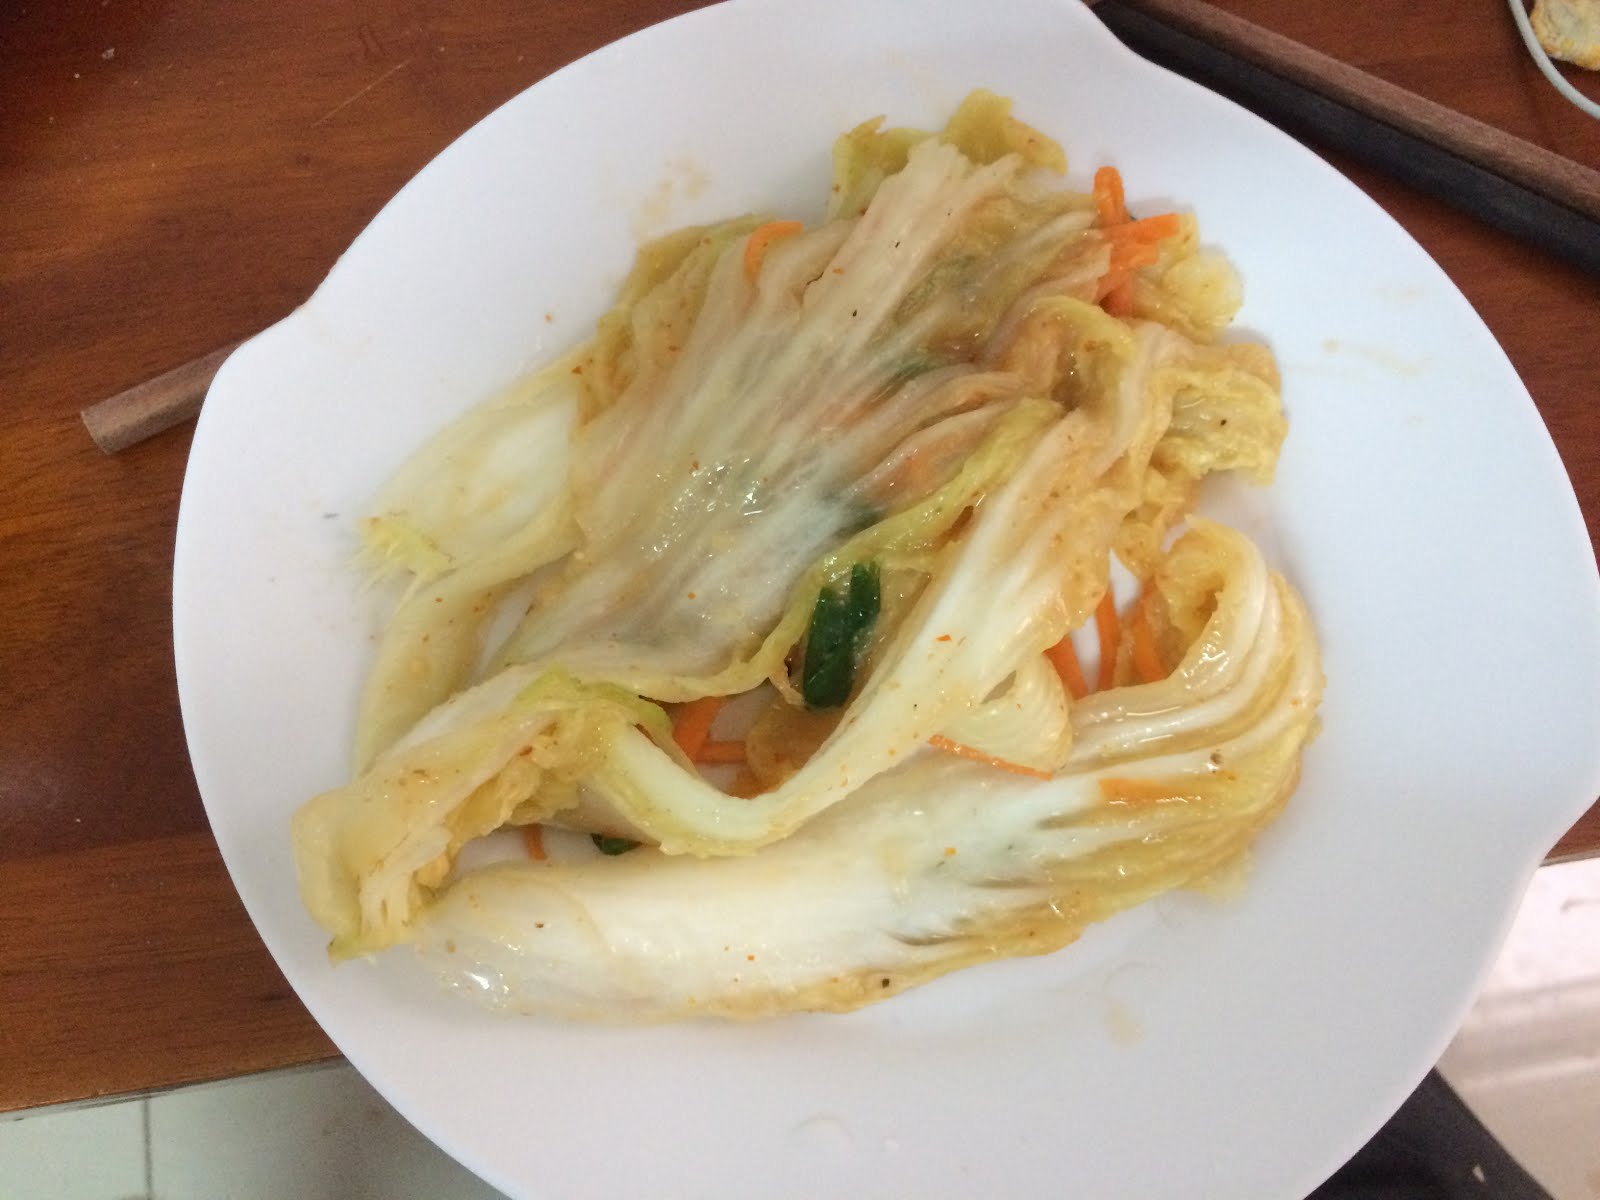 Homemade kimchi